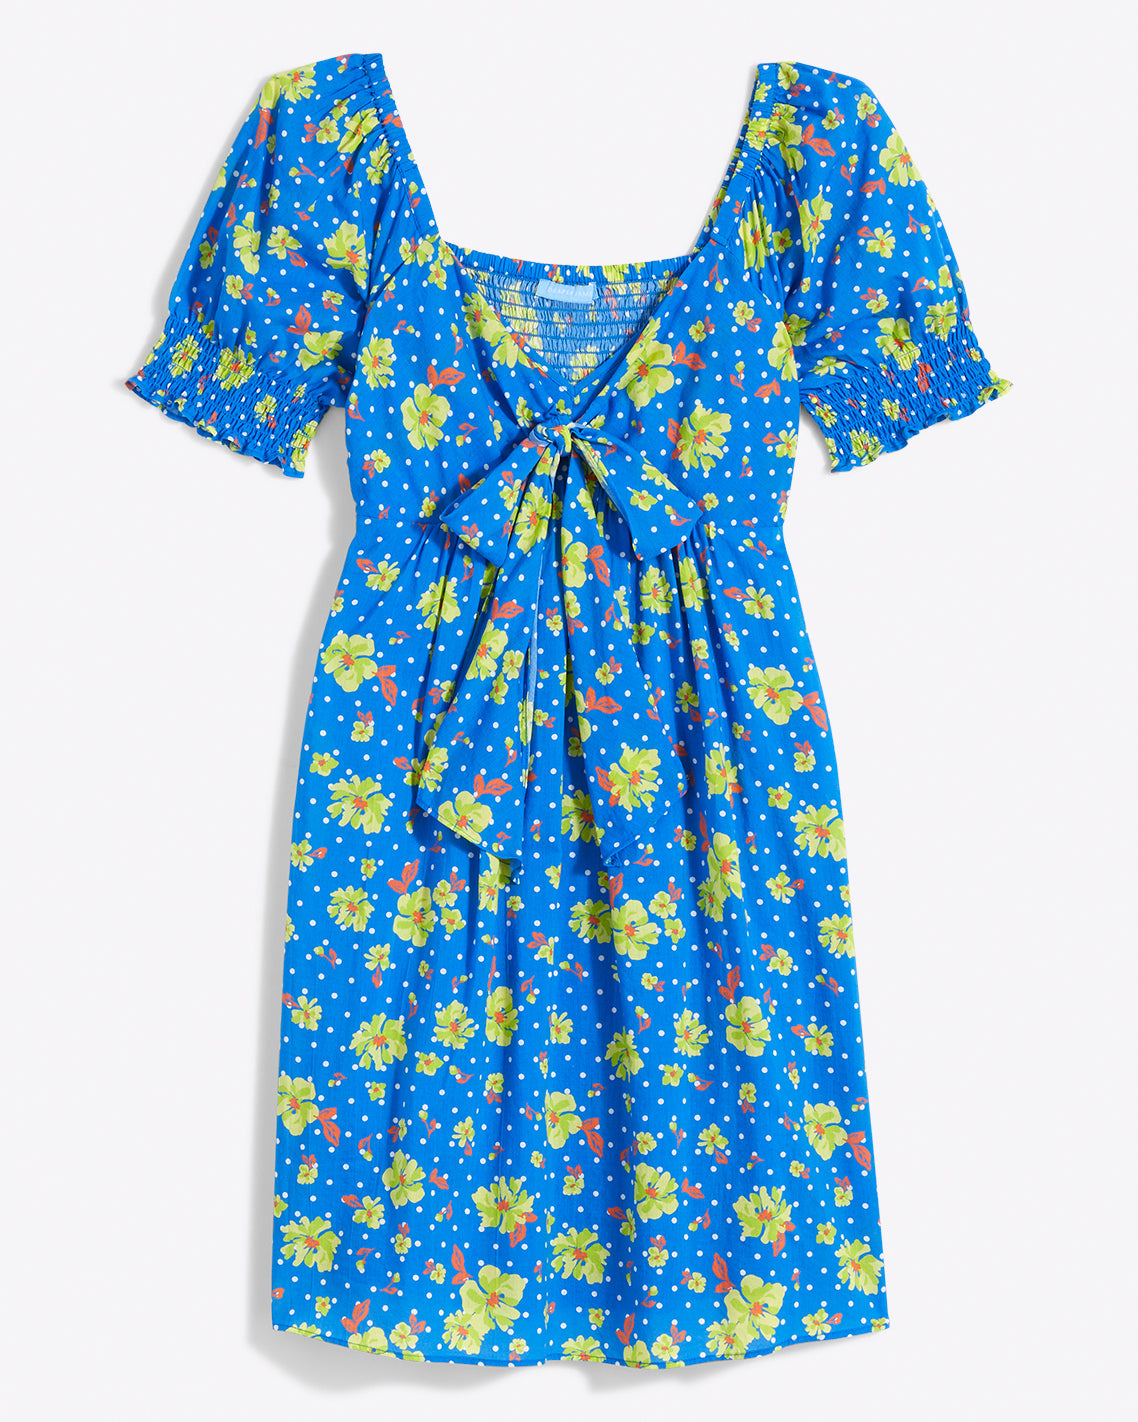 Jennifer Mini Dress in Polka Dot Floral